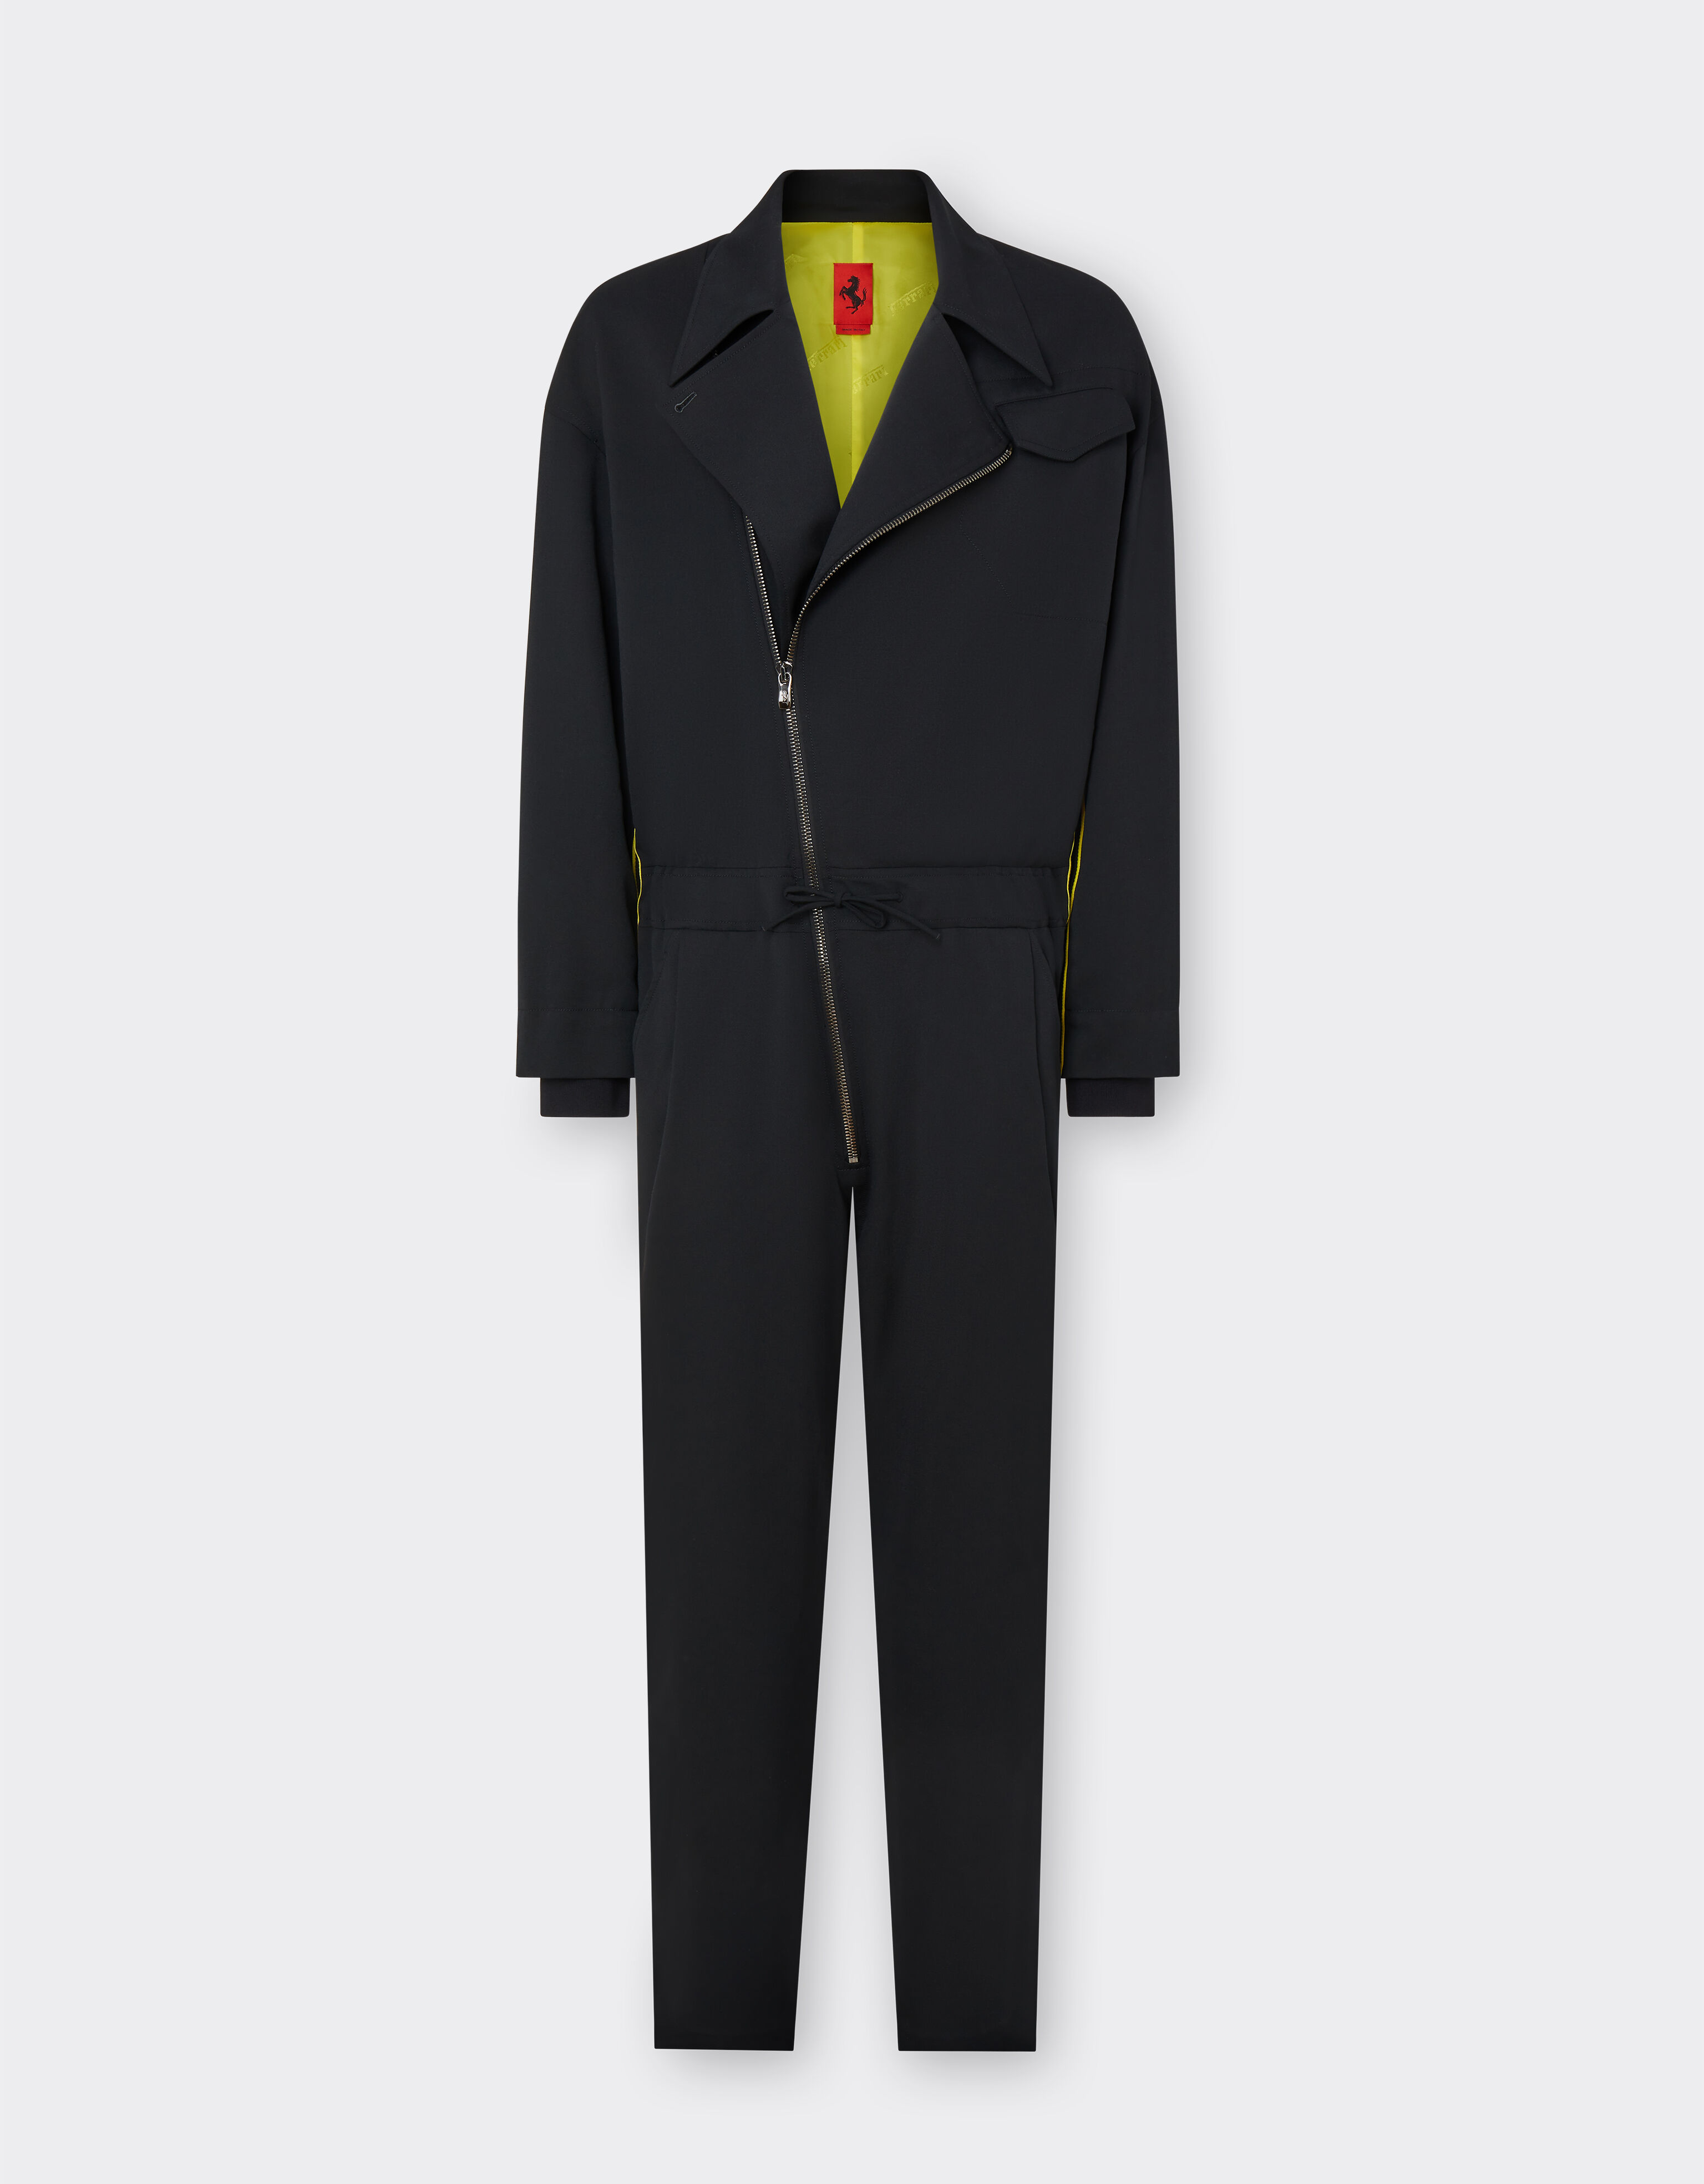 Ferrari Ferrari Suit in lana tecnica Blu Scozia 47525f